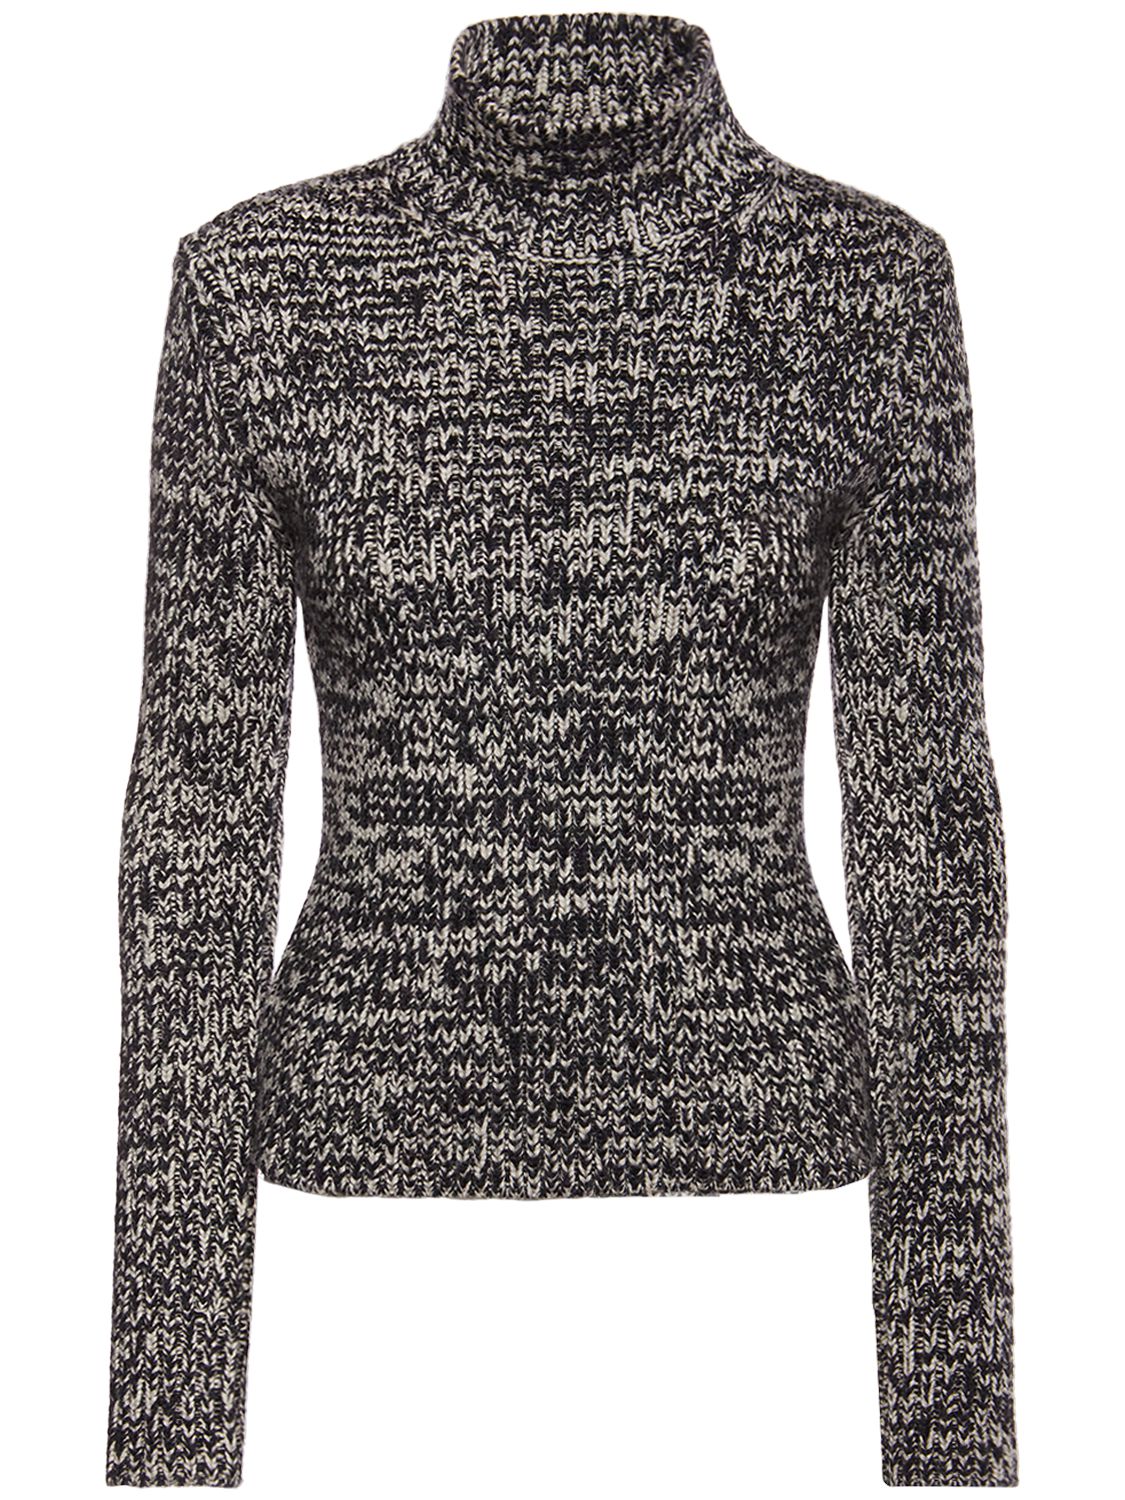 Wool & Silk Knit Turtleneck Sweater